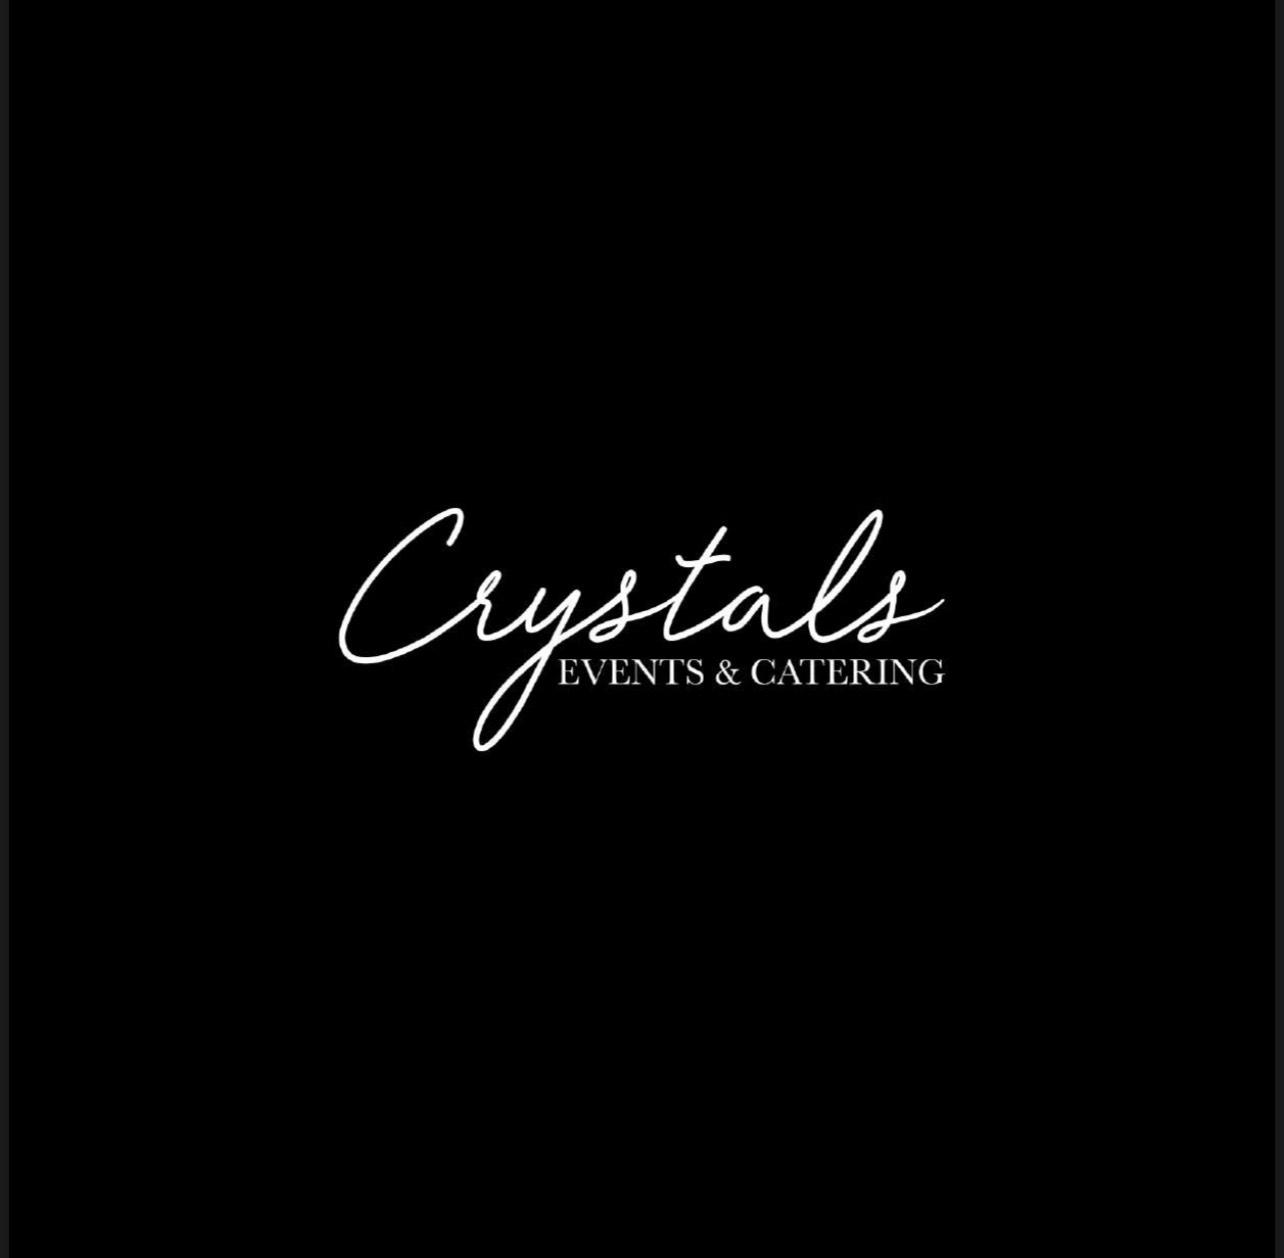 Crystals1